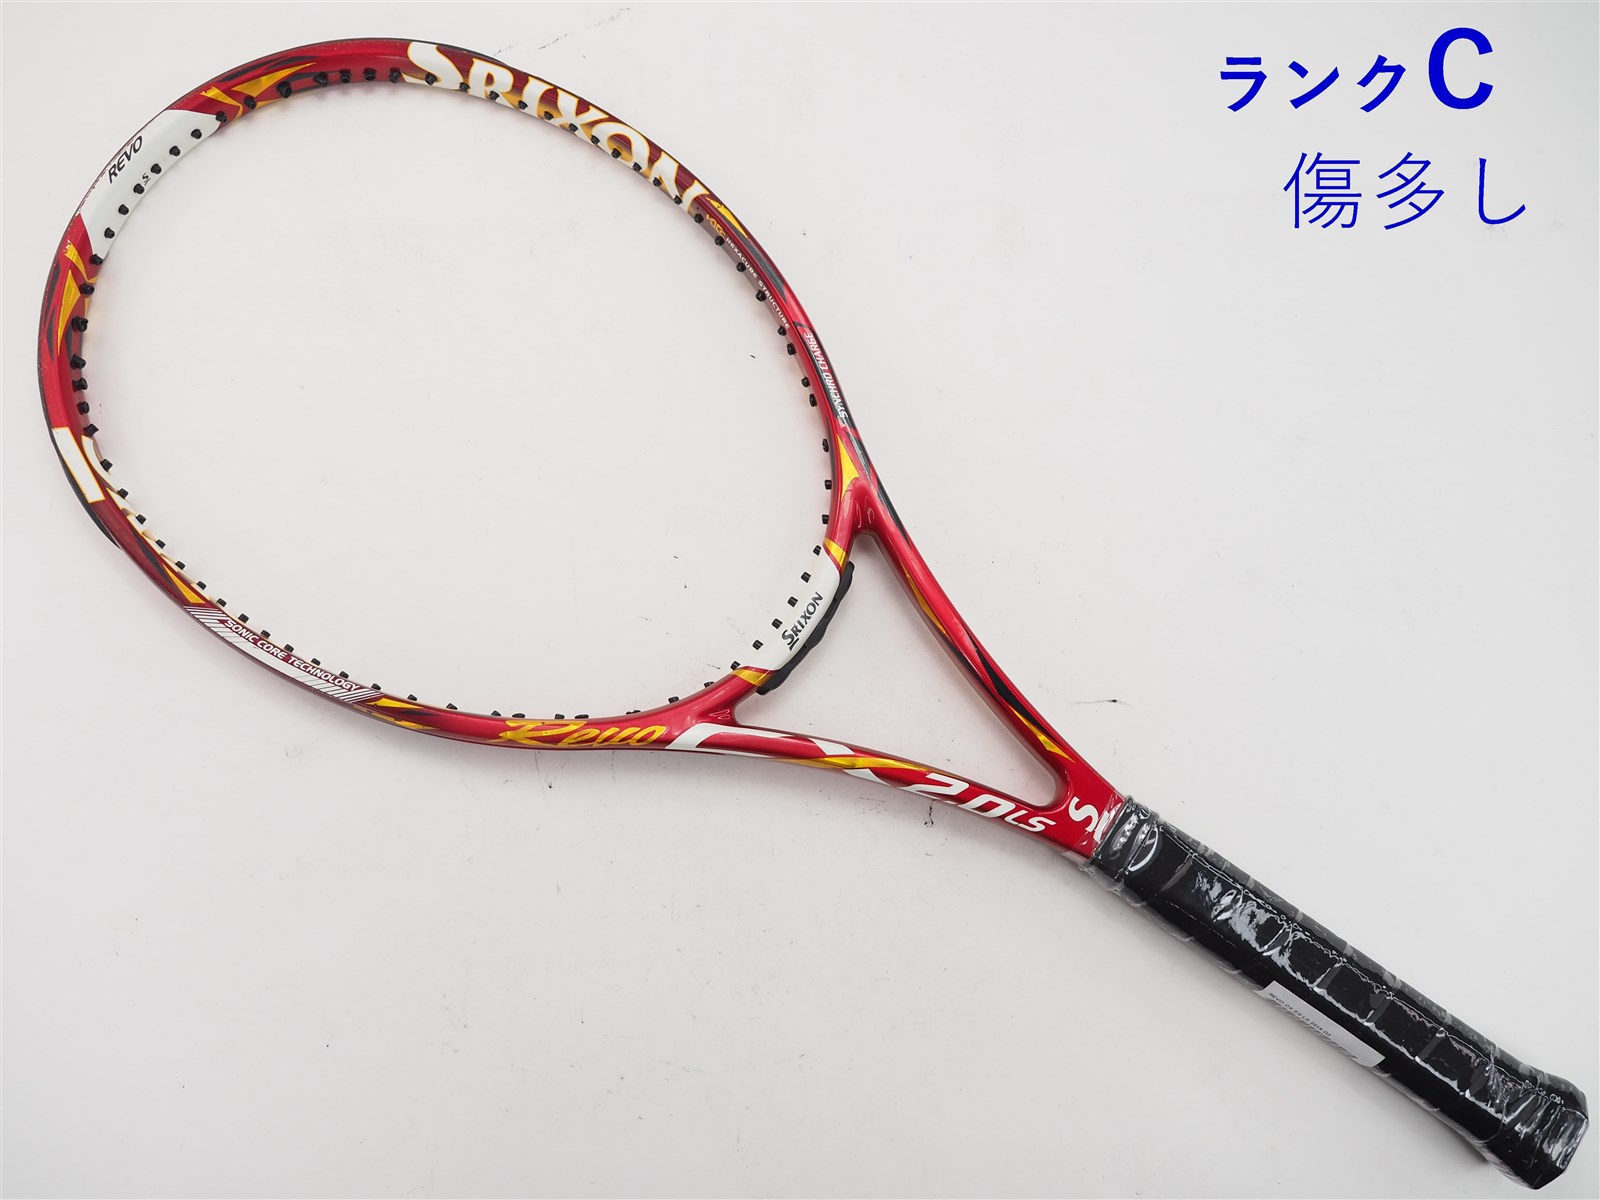 テニスラケット スリクソン レヴォ シーエックス 2.0 ツアー 2015年モデル (G3)SRIXON REVO CX 2.0 TOUR 201595平方インチ長さ